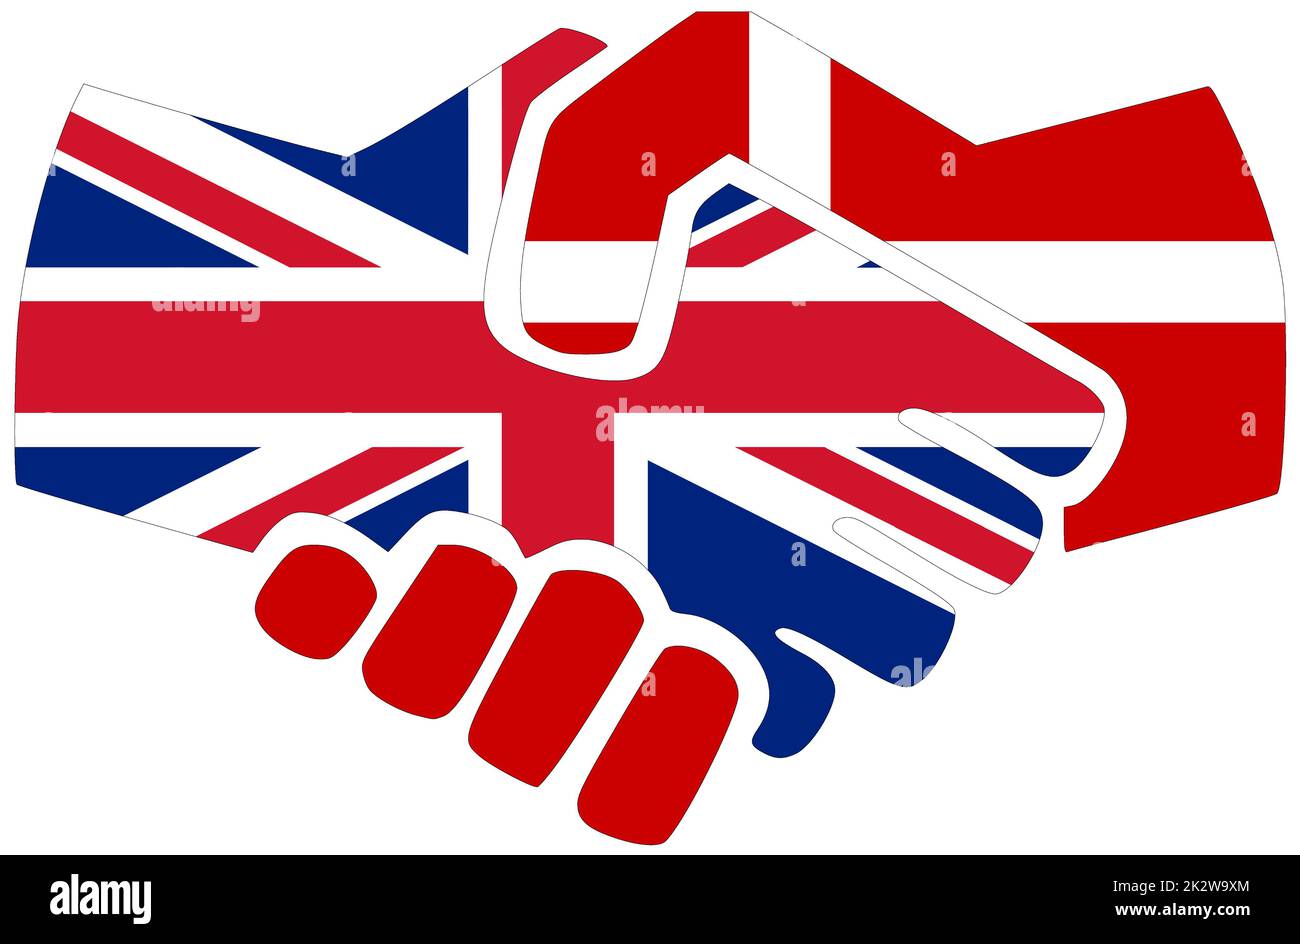 UK - Denmark : Handshake, symbol of agreement or friendship Stock Photo